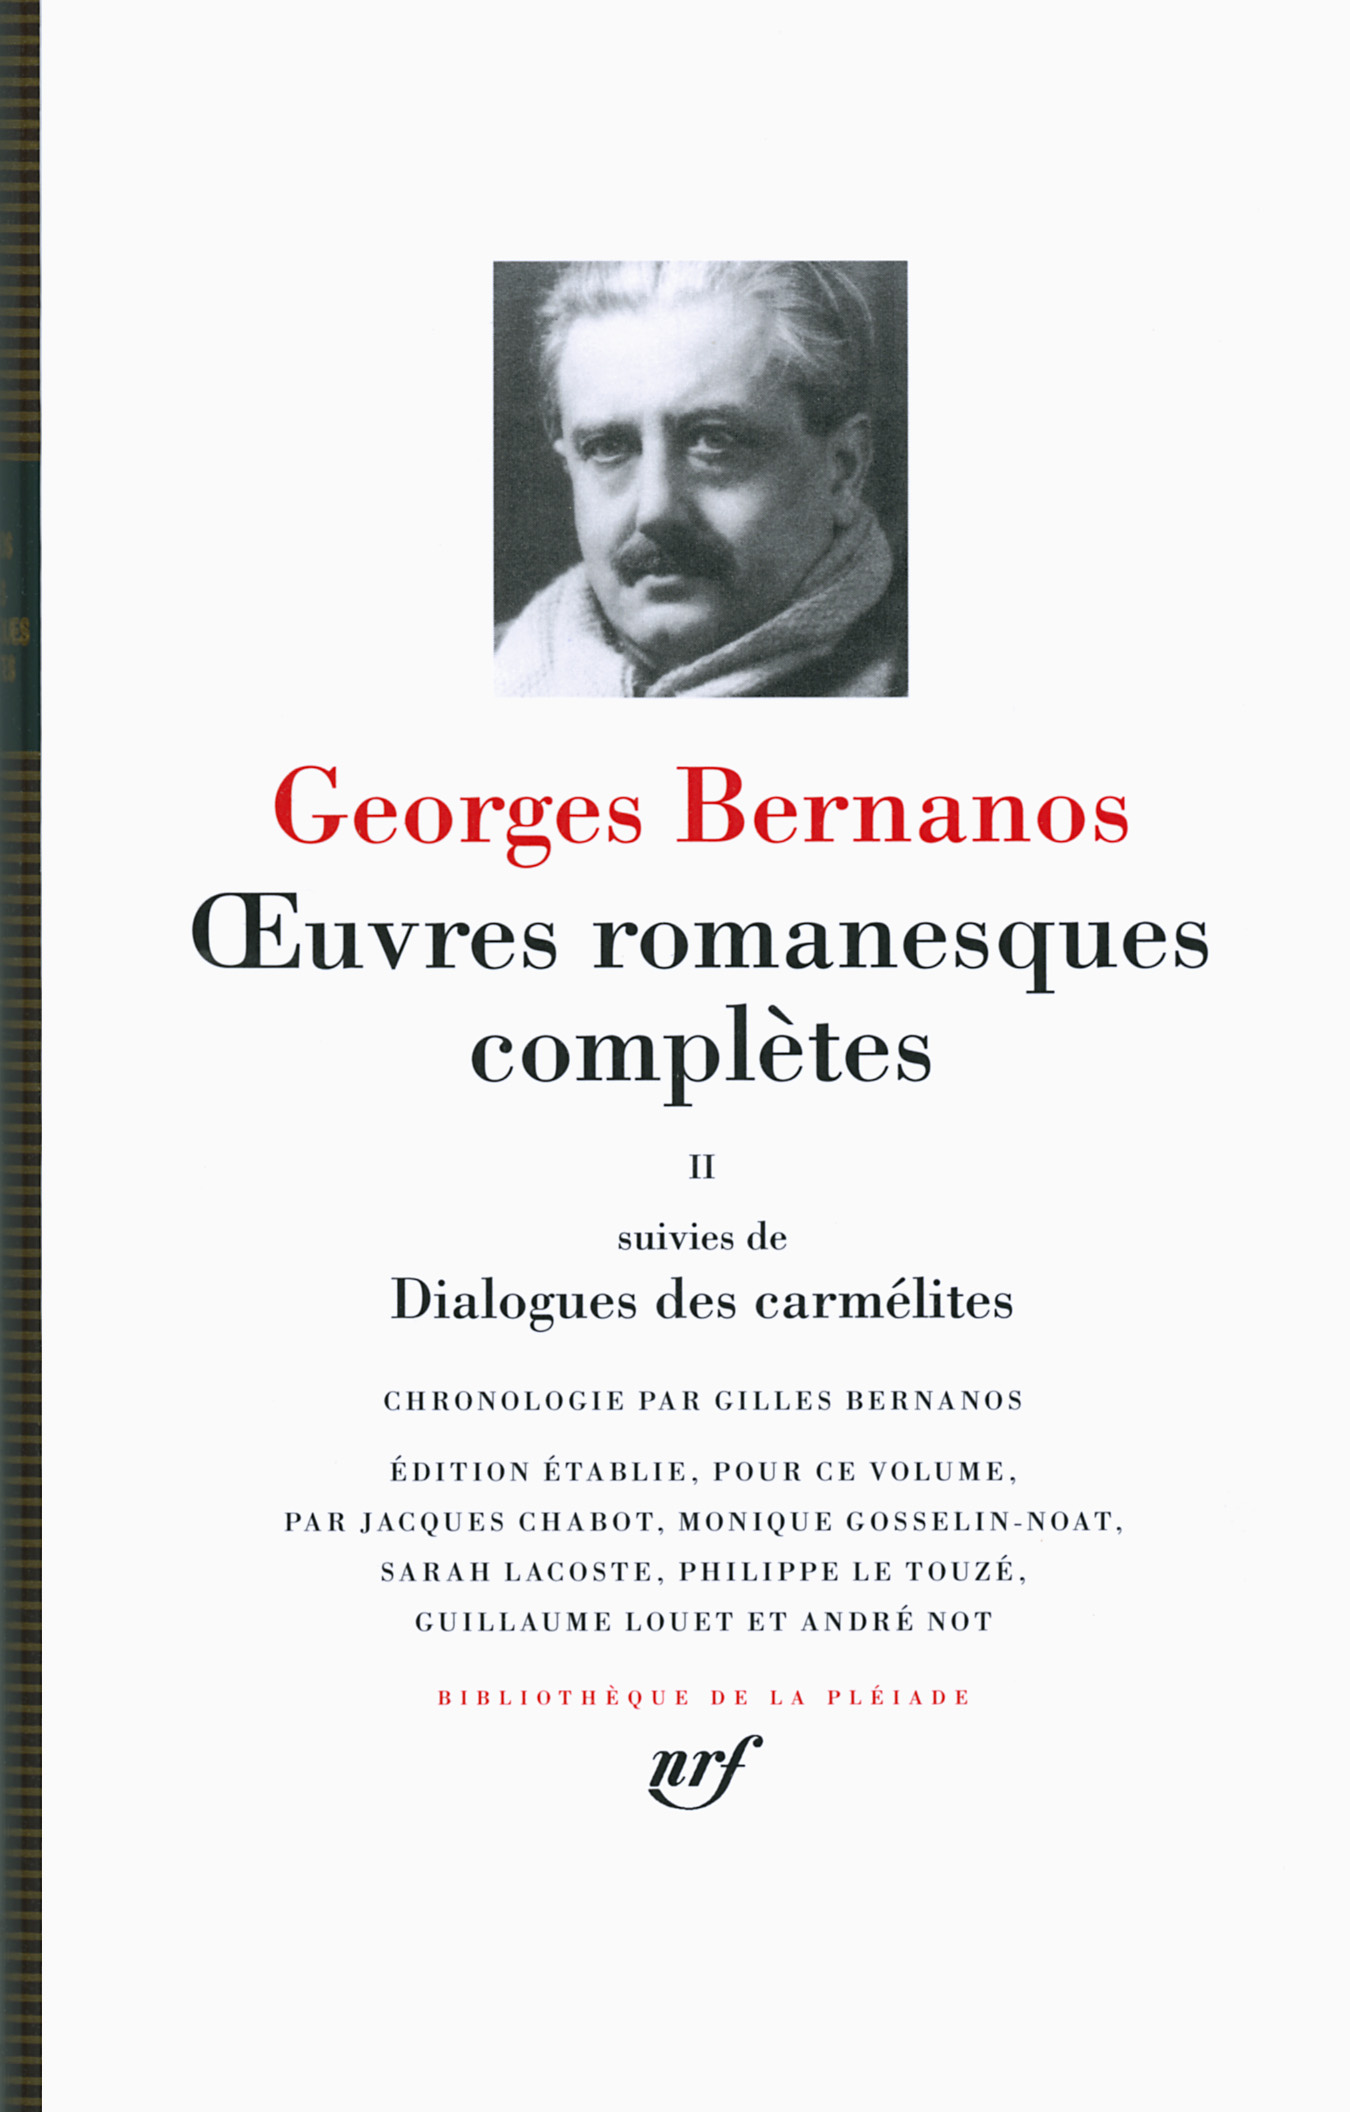 G. Bernanos, Œuvres romanesques complètes, tome 2 (éd.)